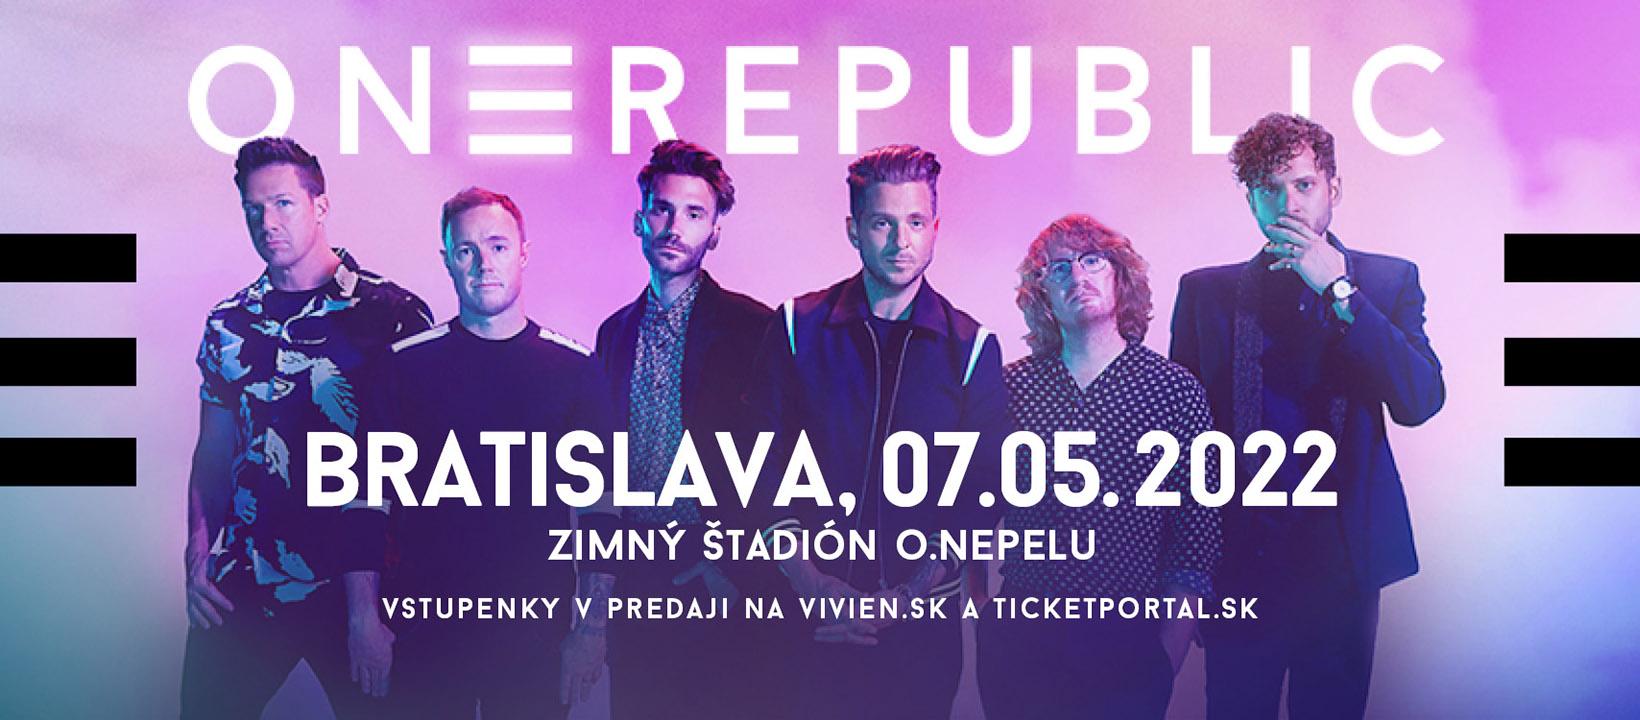 Koncert OneRepublic sa uskutoční 7. mája v Bratislave.